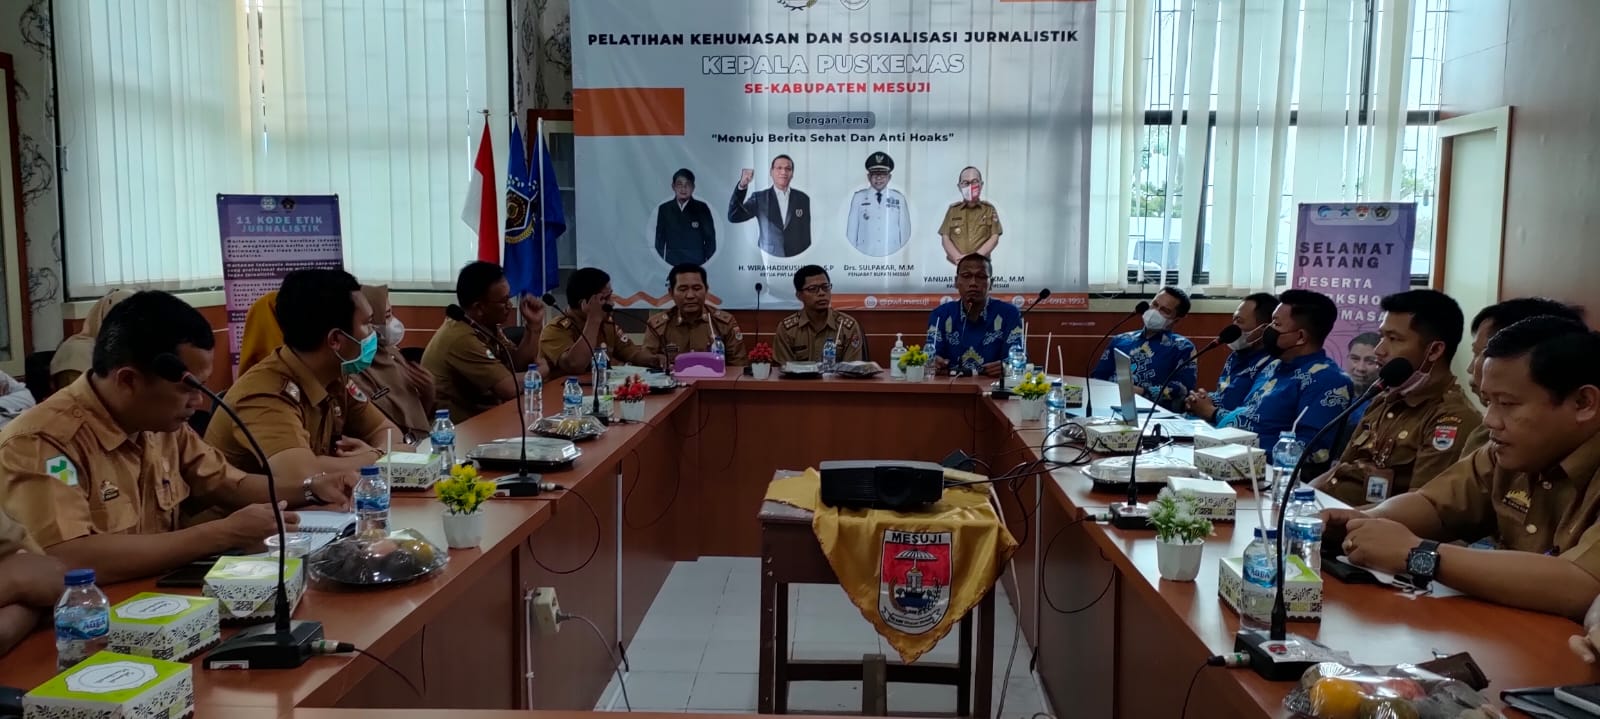 Ketua PWI Lampung: Kepala Puskesmas Jadi Ujung Tombak Mendongkrak Nilai IPM Mesuji